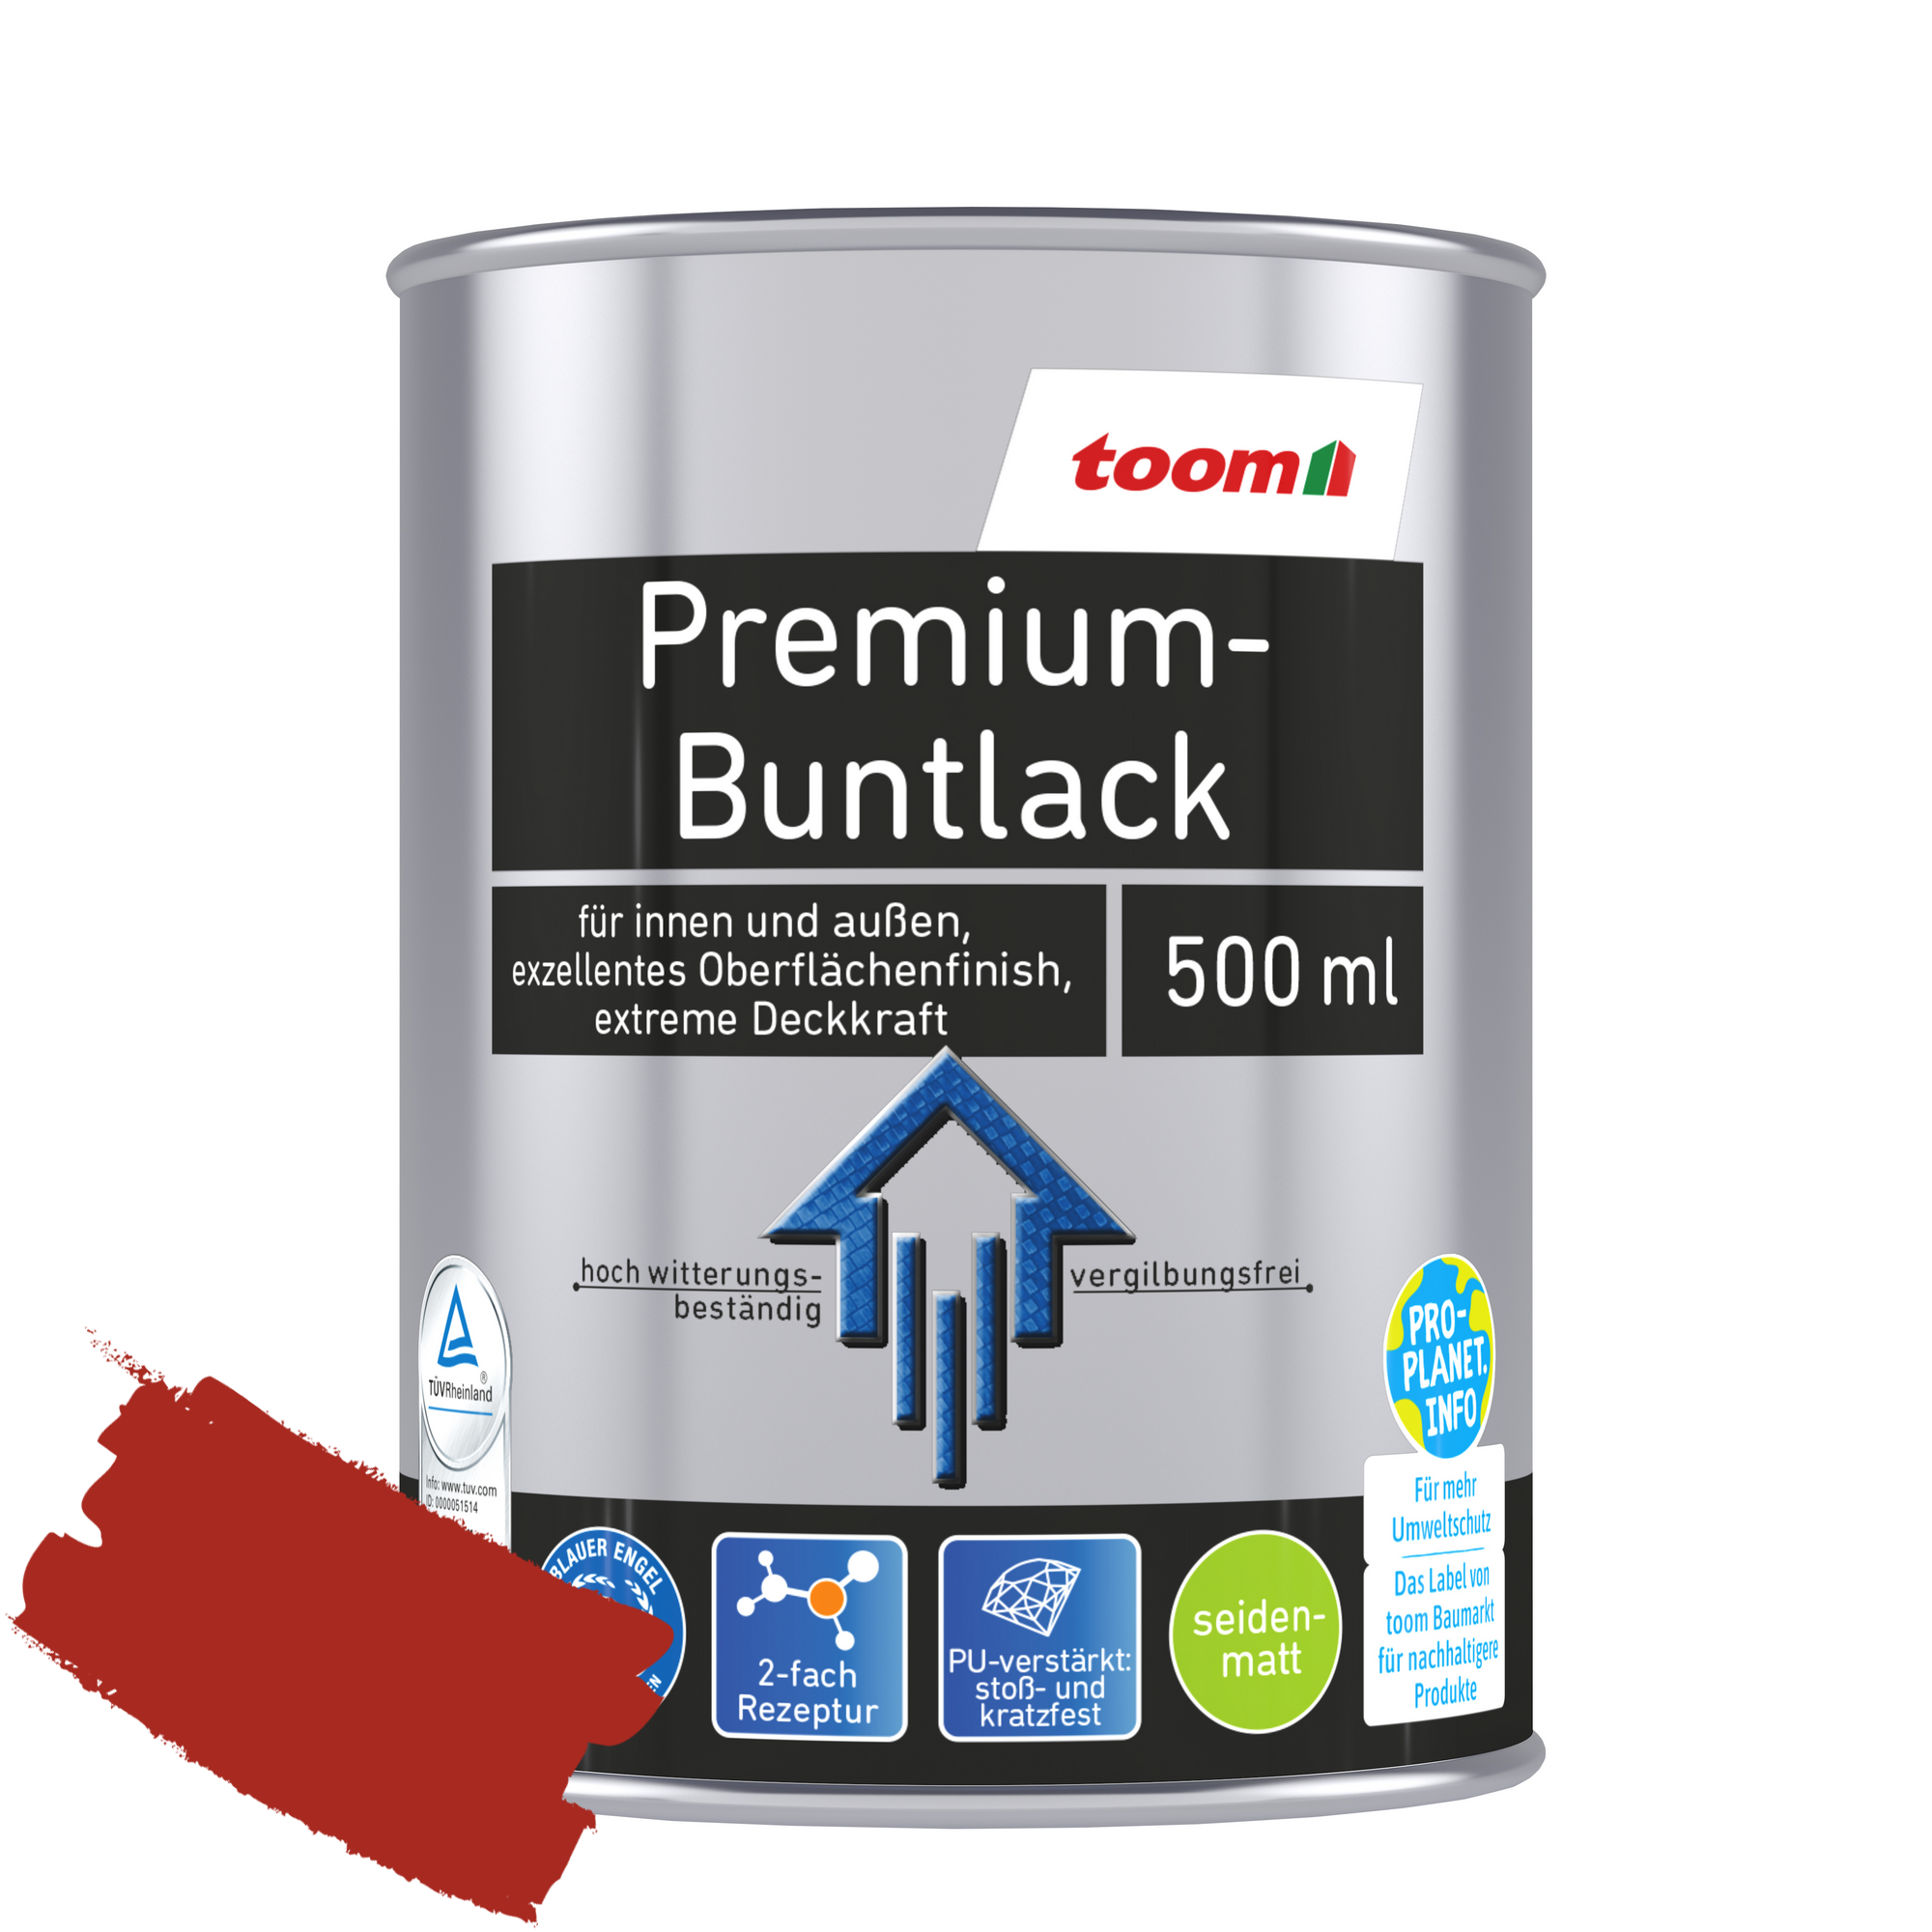 Premium-Buntlack feuerrot seidenmatt 500 ml + product picture